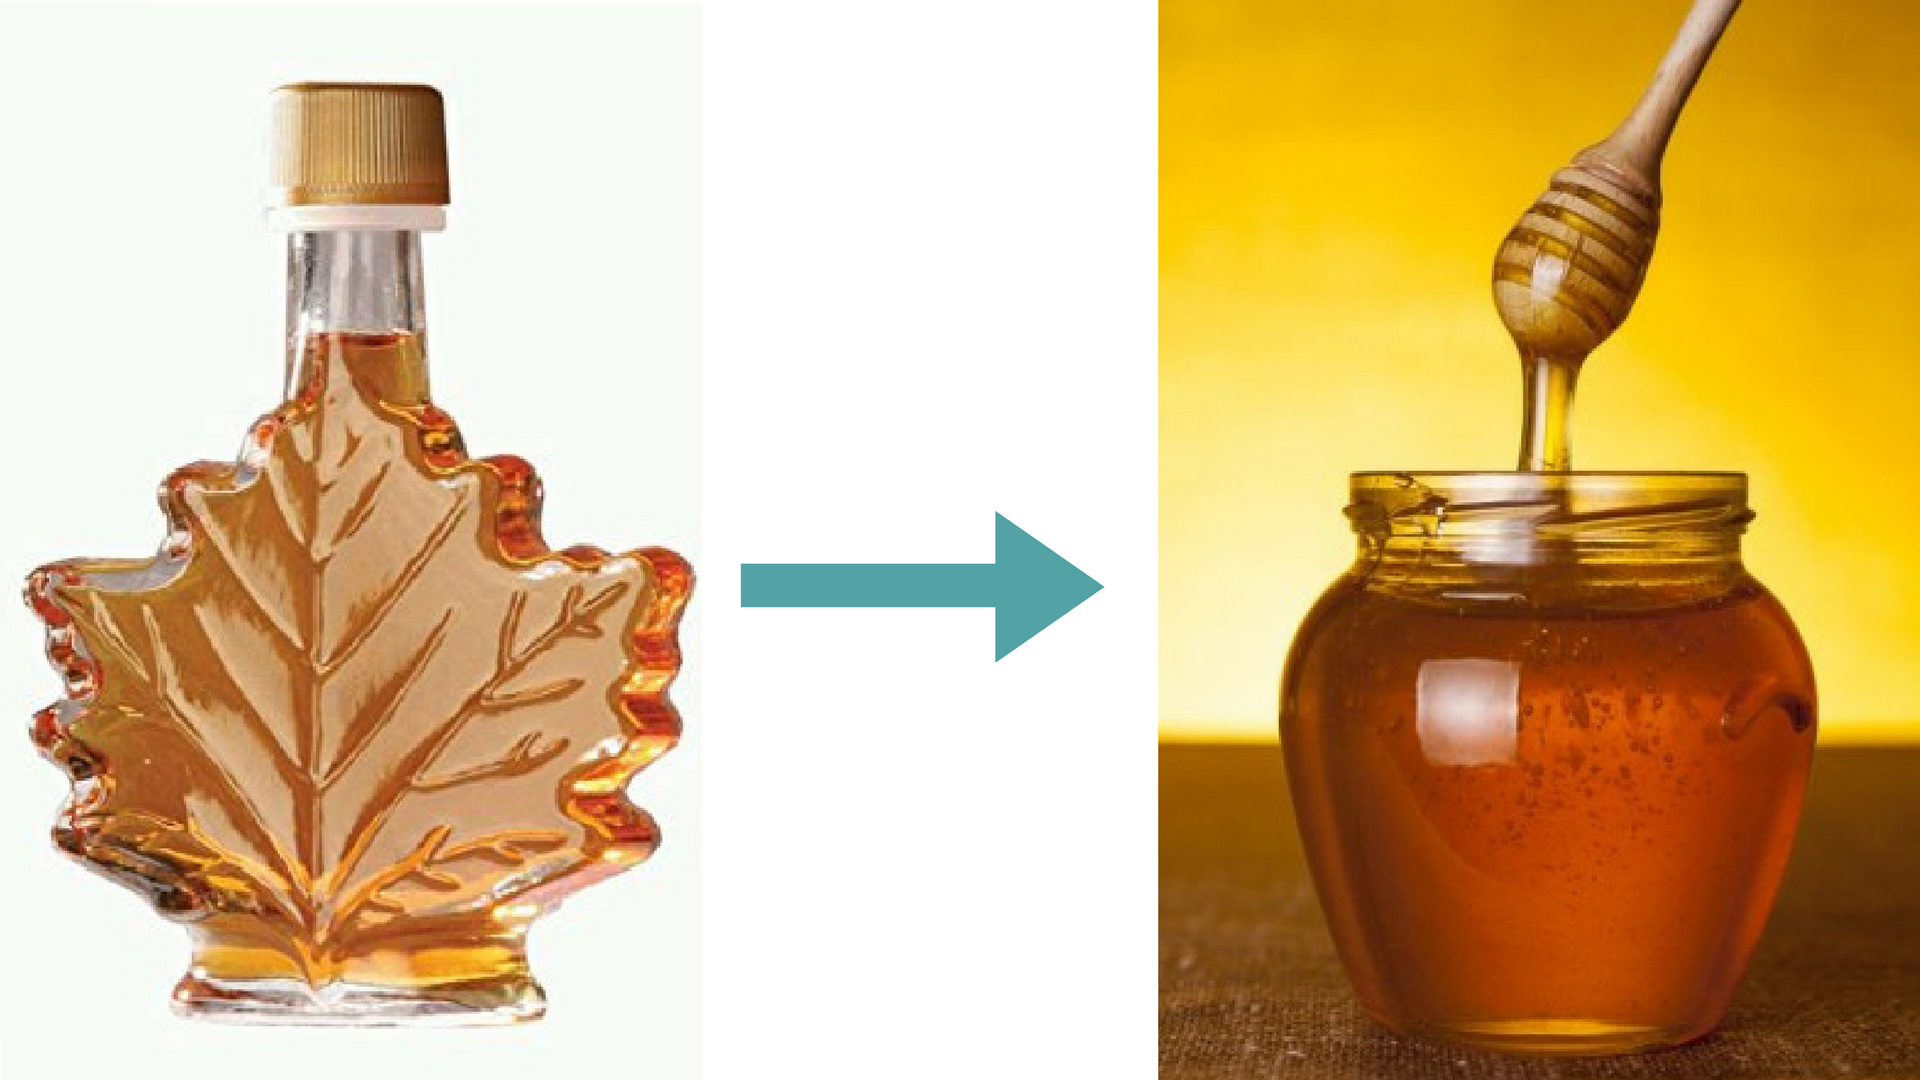 Чернокленовый мед: полезные свойства и противопоказания, польза и вред